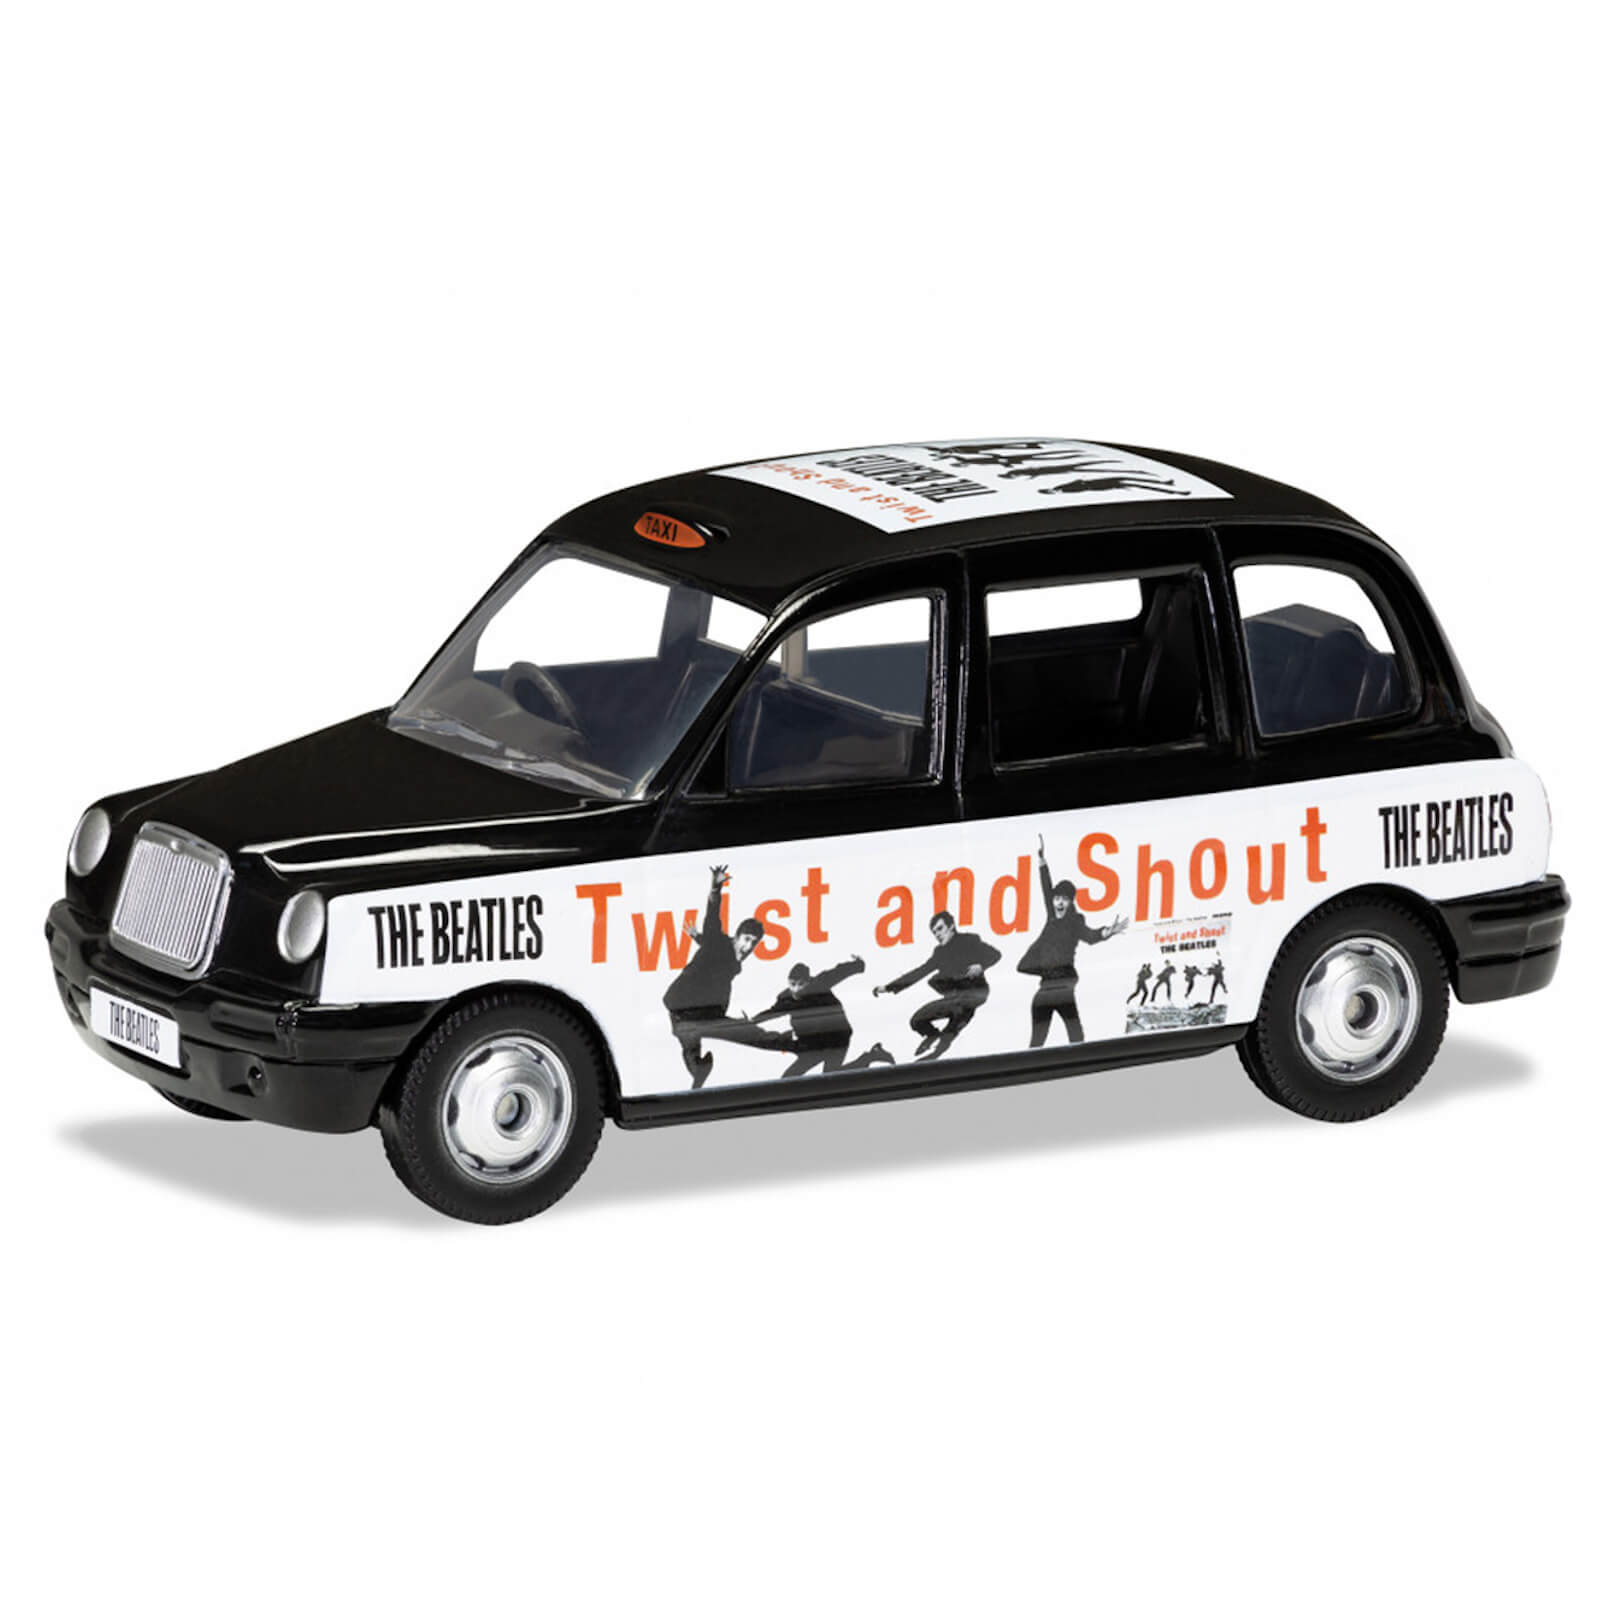 Maquetas de los Beatles London Taxi Twist and Shout - Escala 1:36